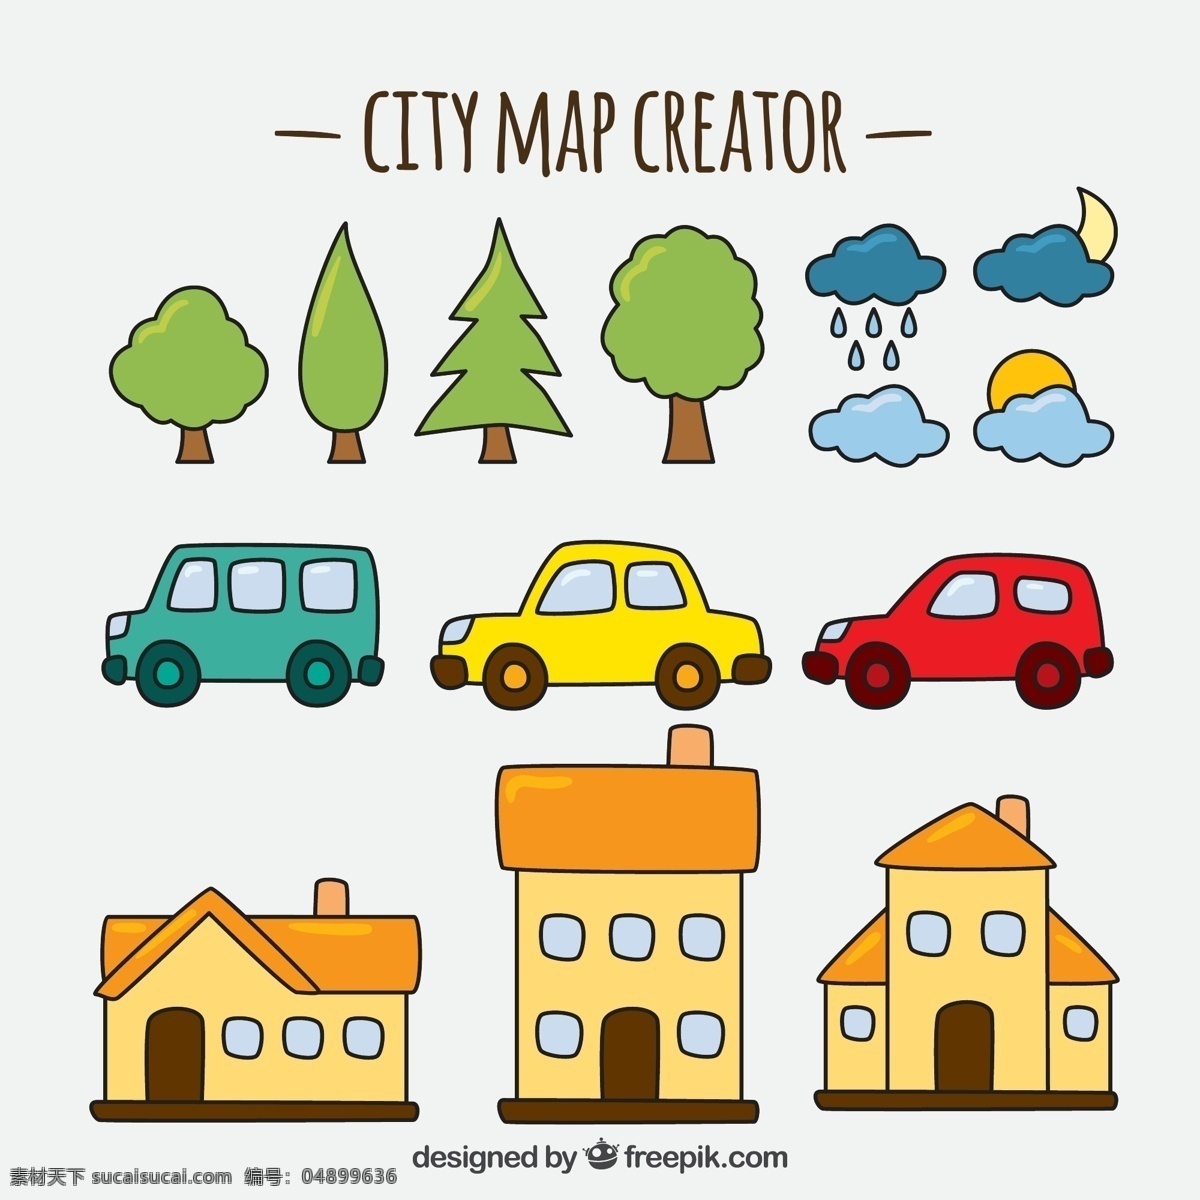 可爱 项目 选择 创建 一个 城市 元素 创建城市元素 创建城市 卡通建筑 汽车 树木 修建城市 白色